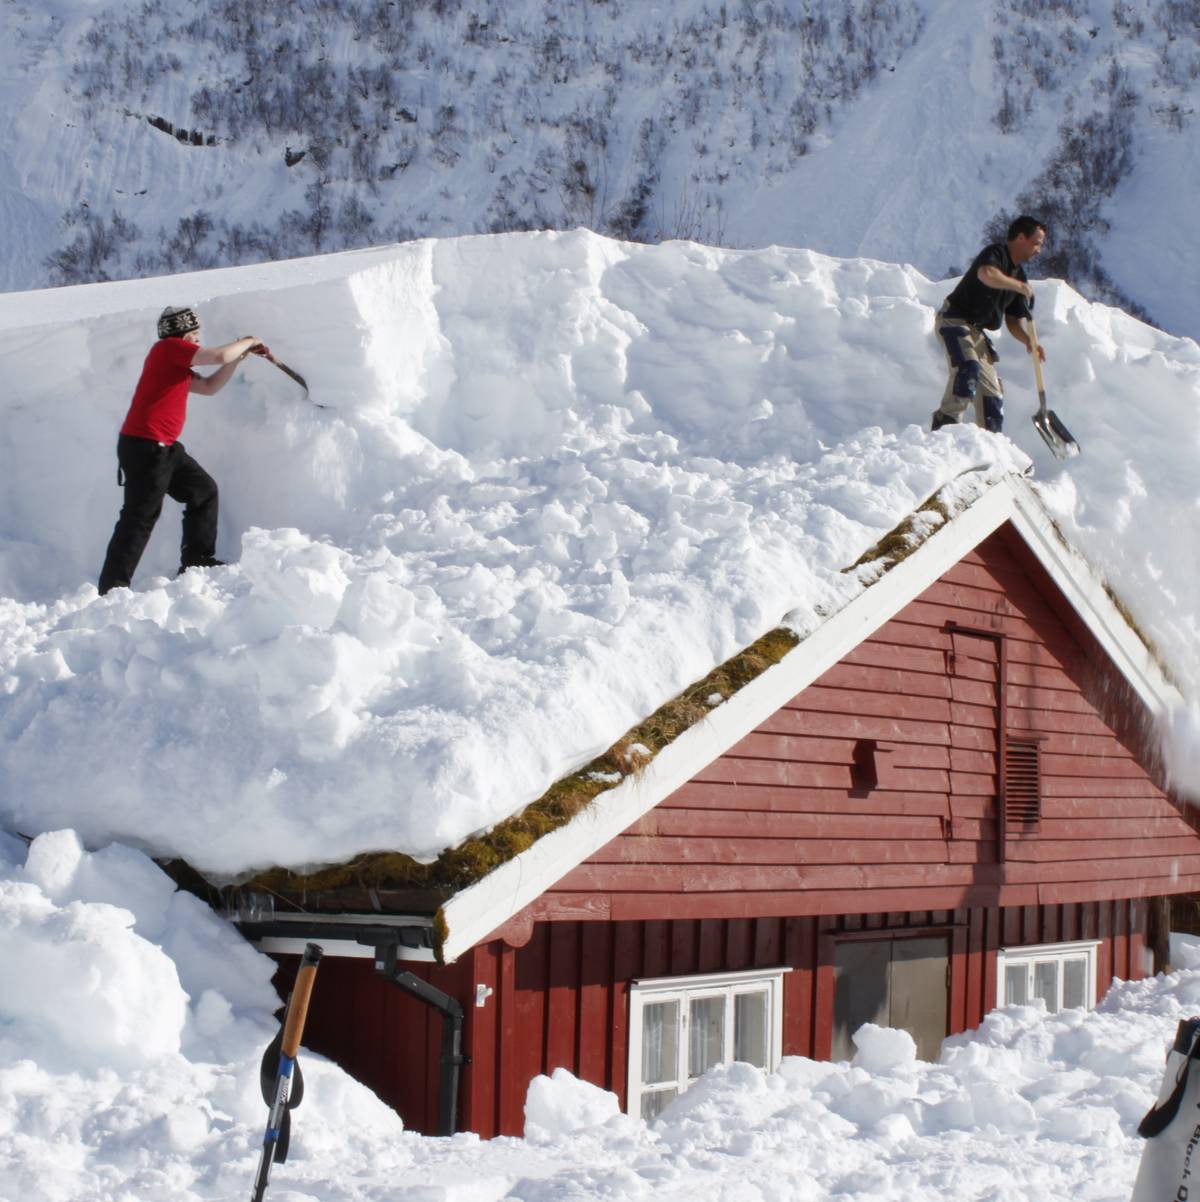 Уборка снега крыш домов. Очистка снега с крыши. Снег на крыше. Сугробы по крыши. Снег на крышах домов.